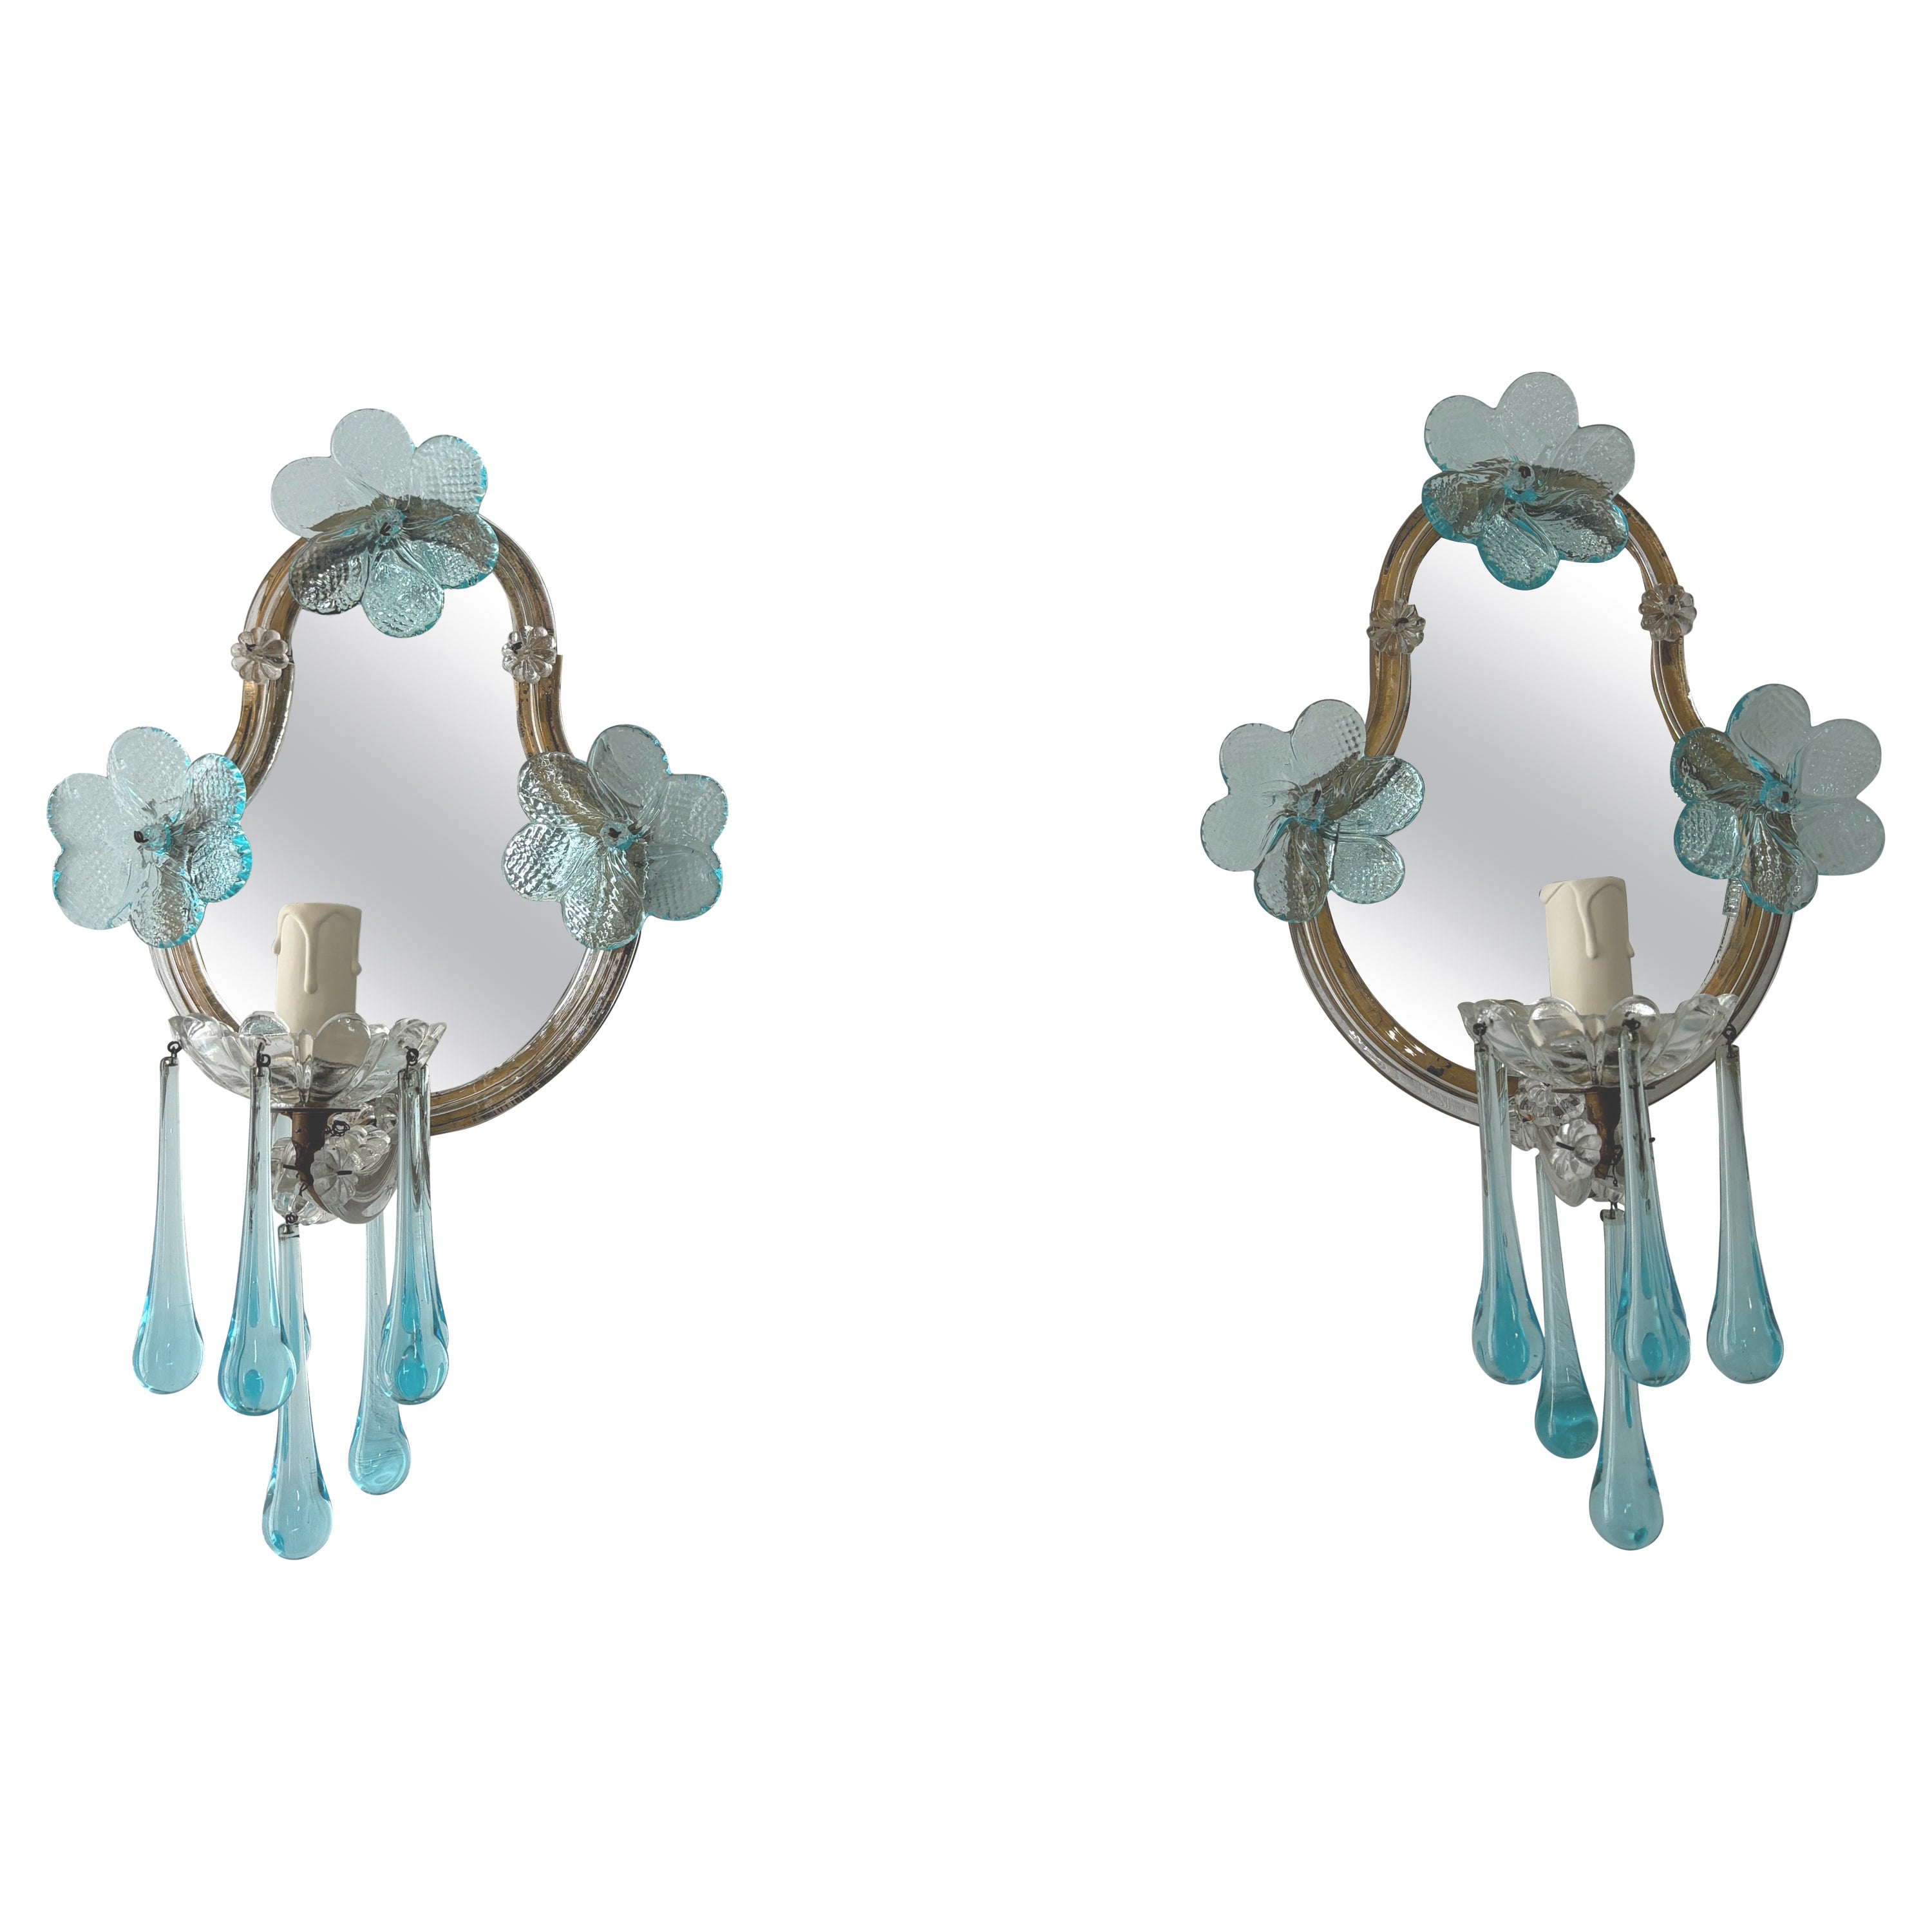 1920s French Rare Aqua Blue Murano Glass Drops & Flowers Mirrored Sconces